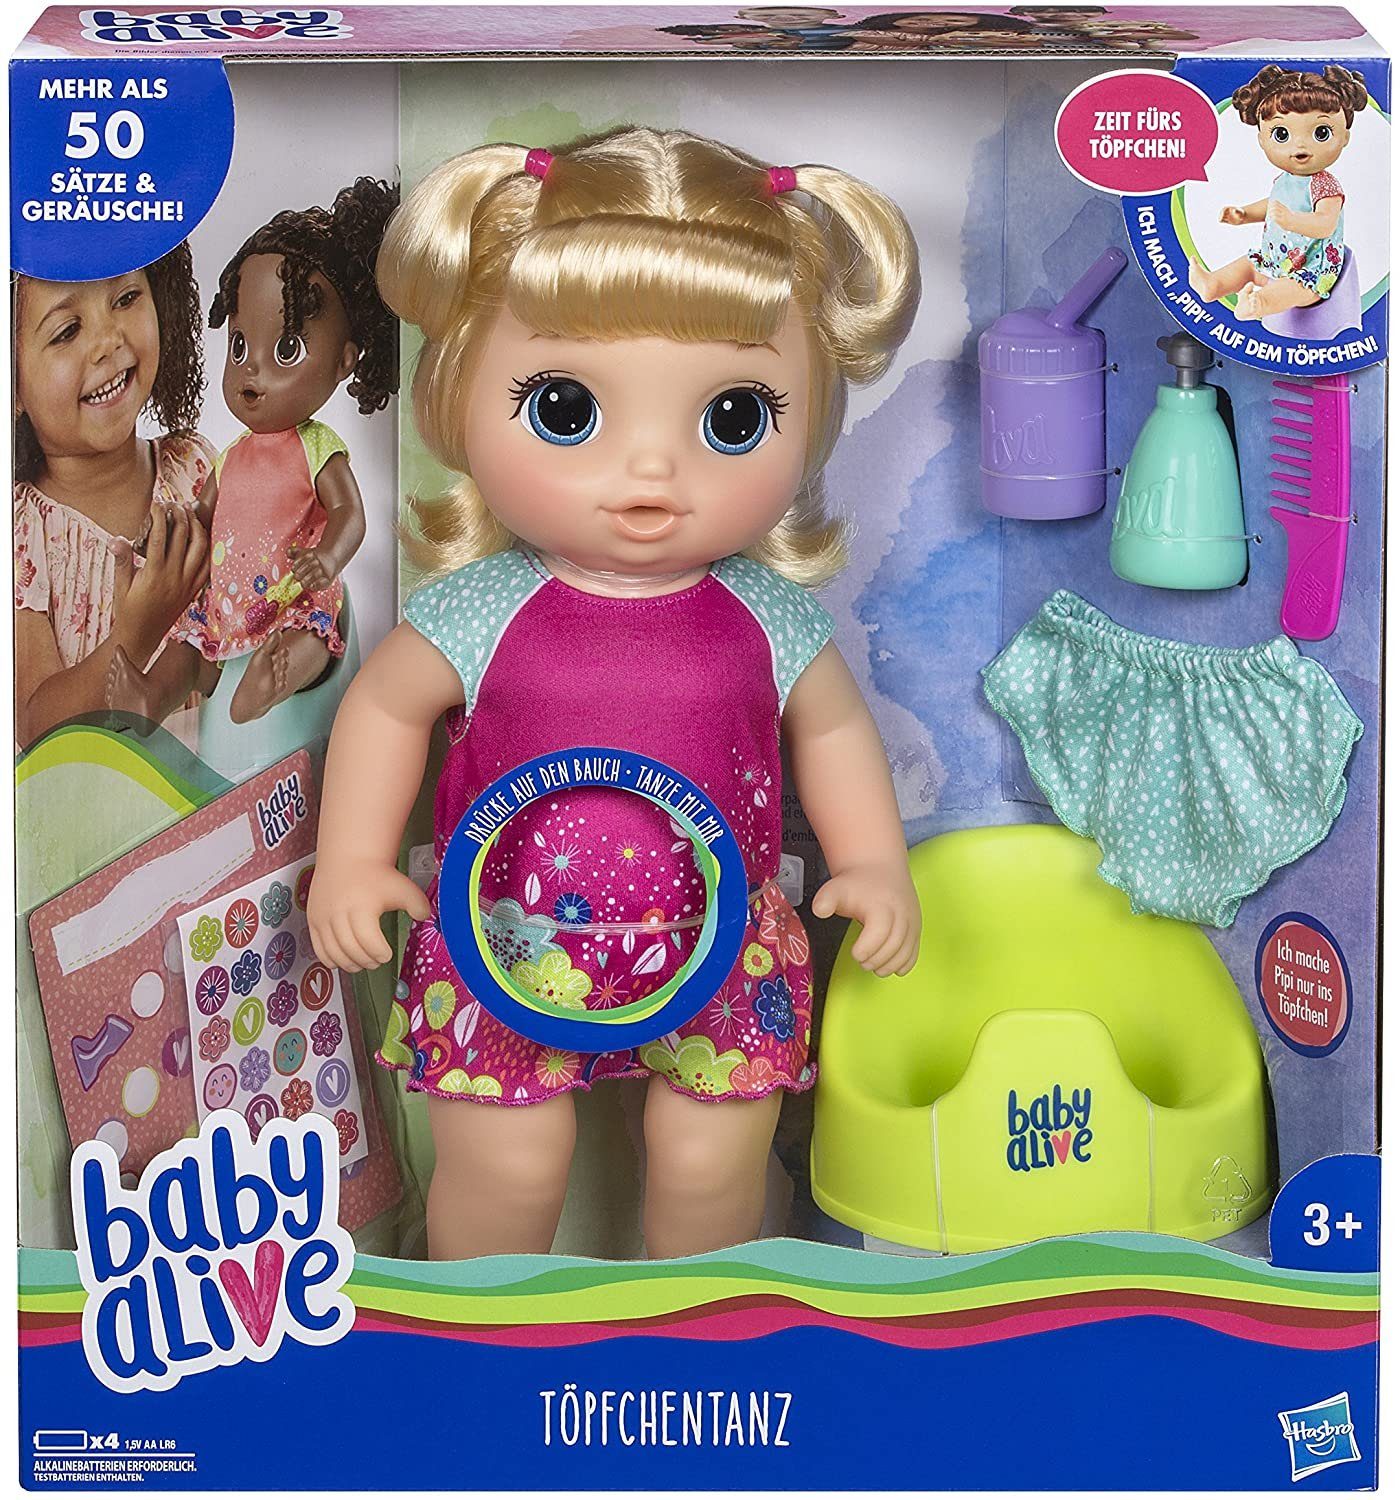 Hasbro Baby Alive Baby Interaktive Puppe mehr als 20 Sätze Geräusche Zubehör NEU 